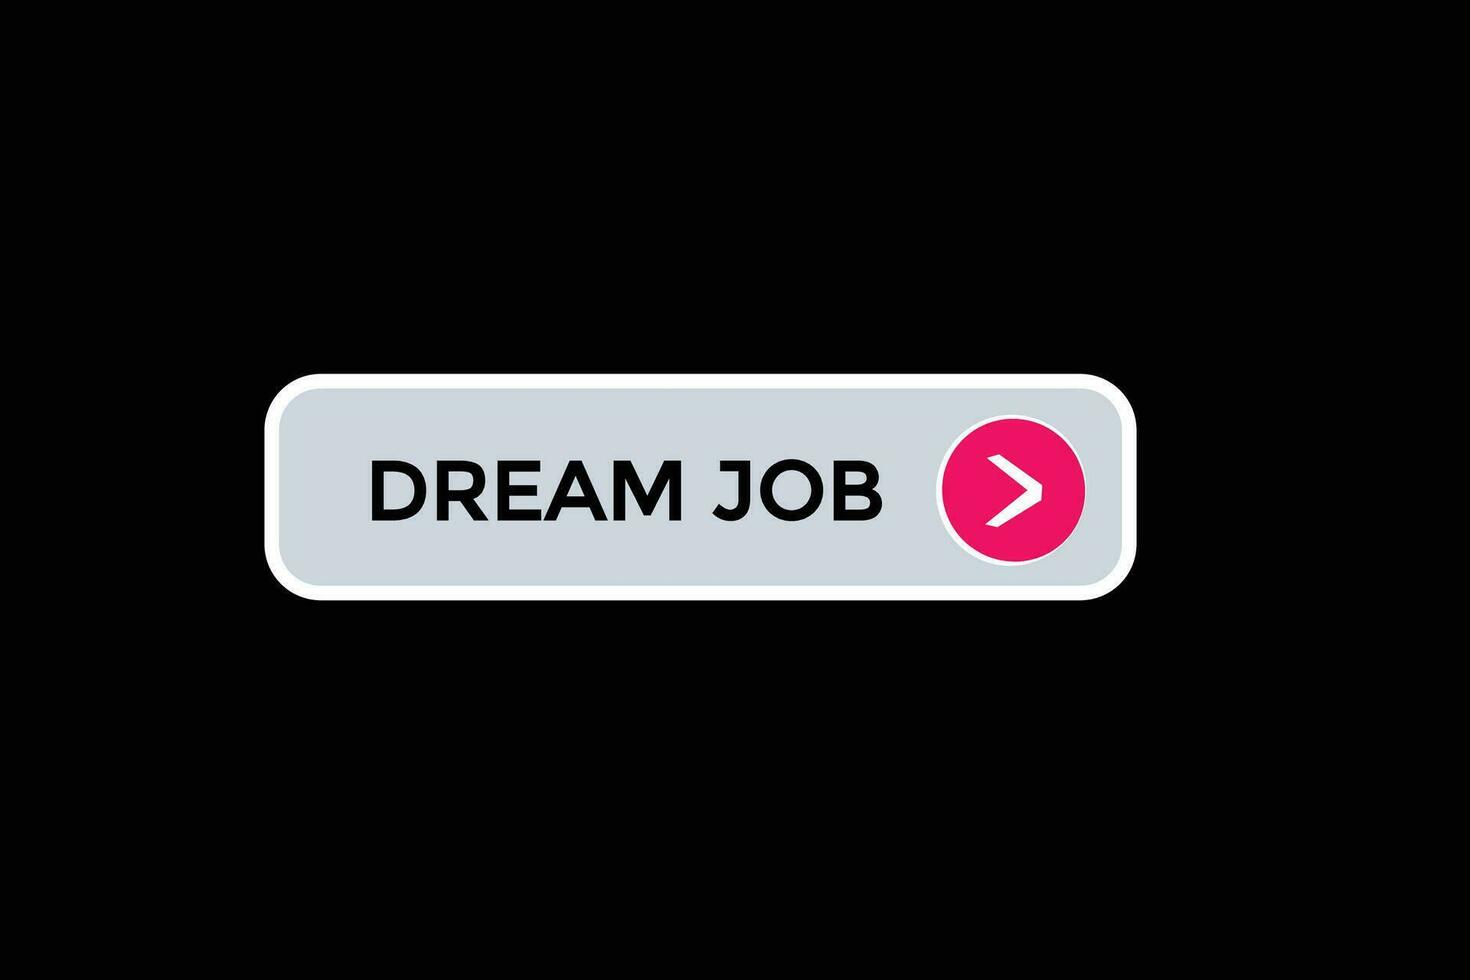 nuovo sognare lavoro sito web, clic pulsante, livello, cartello, discorso, bolla striscione, vettore